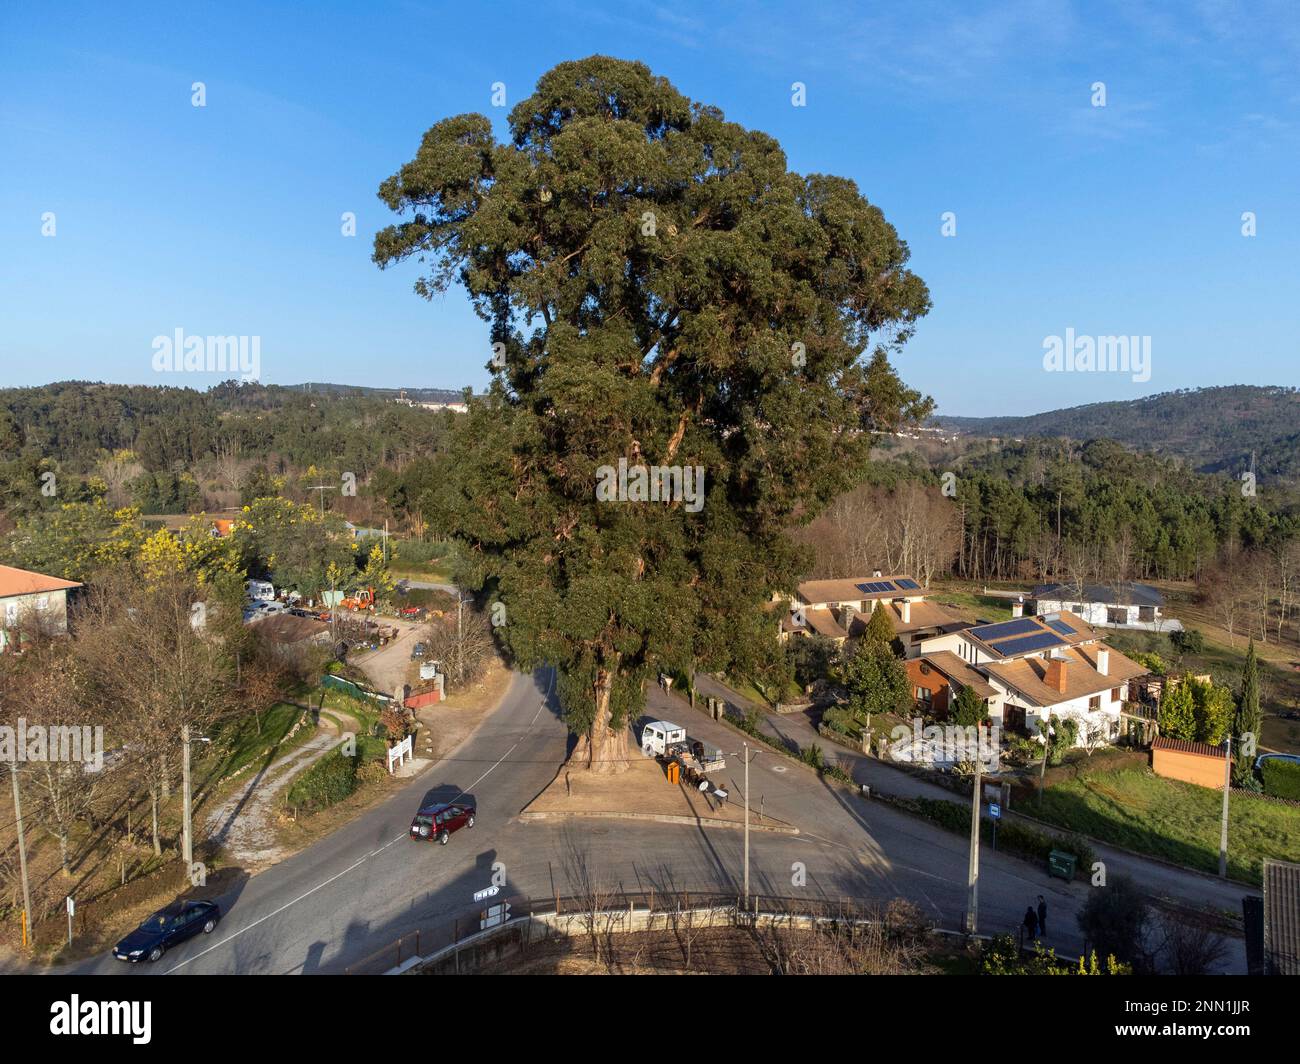 Vue en grand angle de l'Eucalipto de Contige - un arbre d'eucalyptus de 43 mètres (141 pieds) de haut dans le centre du Portugal qui a remporté le meilleur arbre portugais en 2023 Banque D'Images